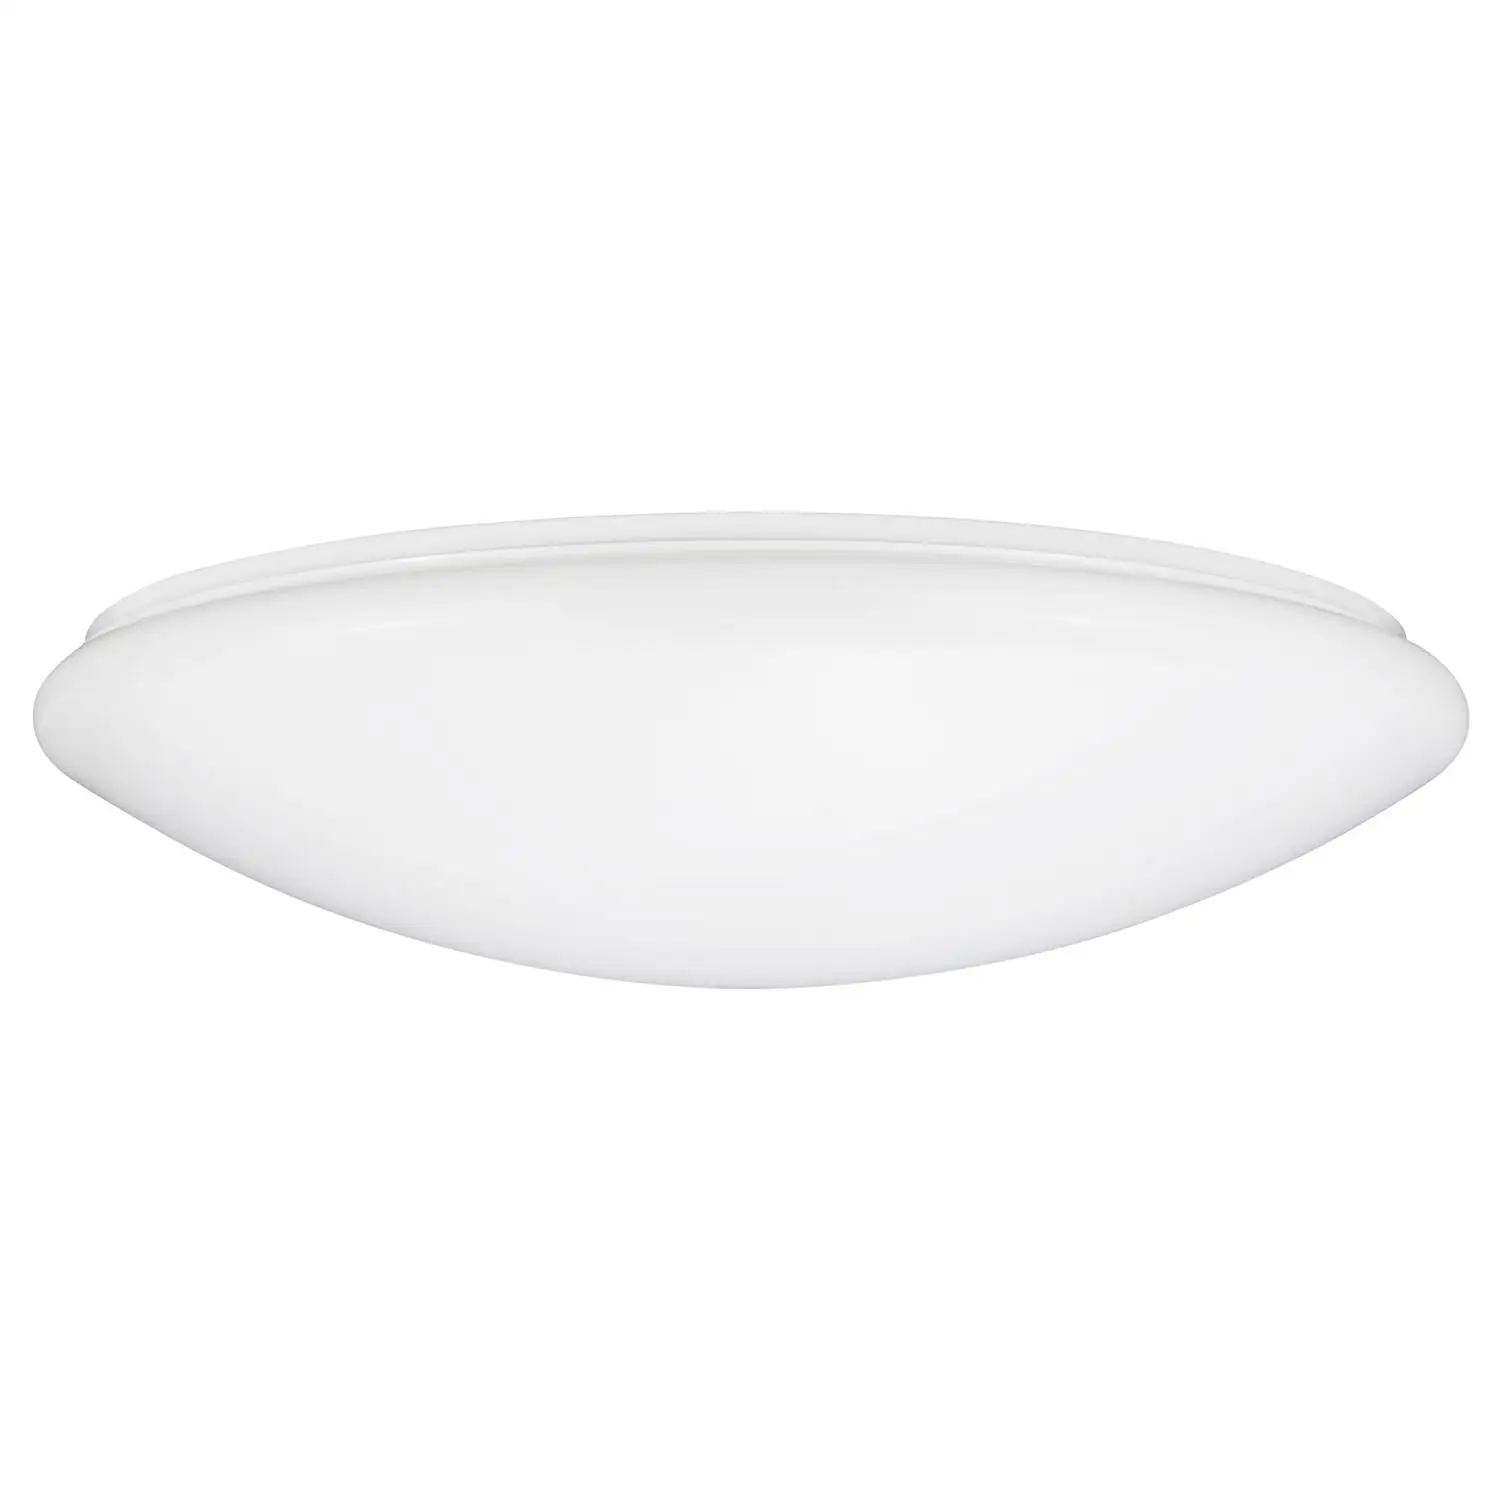 Sunlite LED Mushroom Ceiling Light Fixture, 16 Watt, Dimmable, 1160 Lumen, 50K - Super White